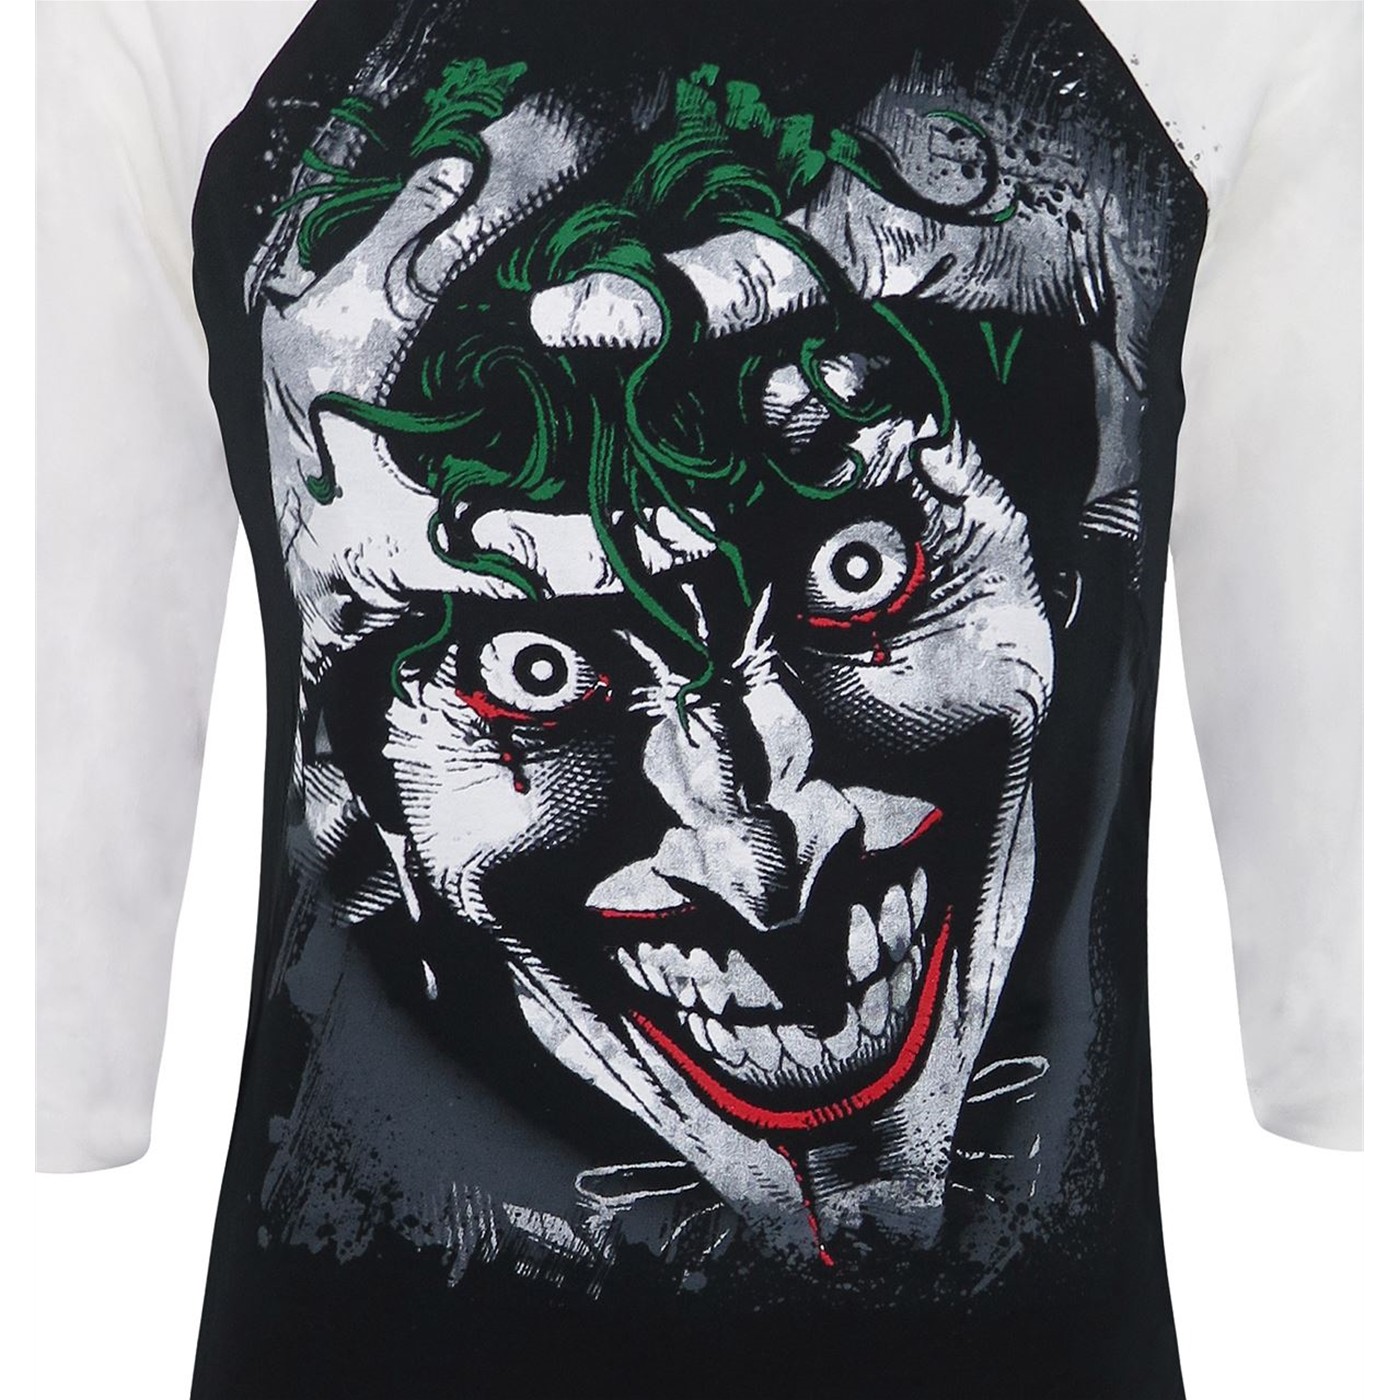 Joker Killing Joke Men's Baseball T-Shirt